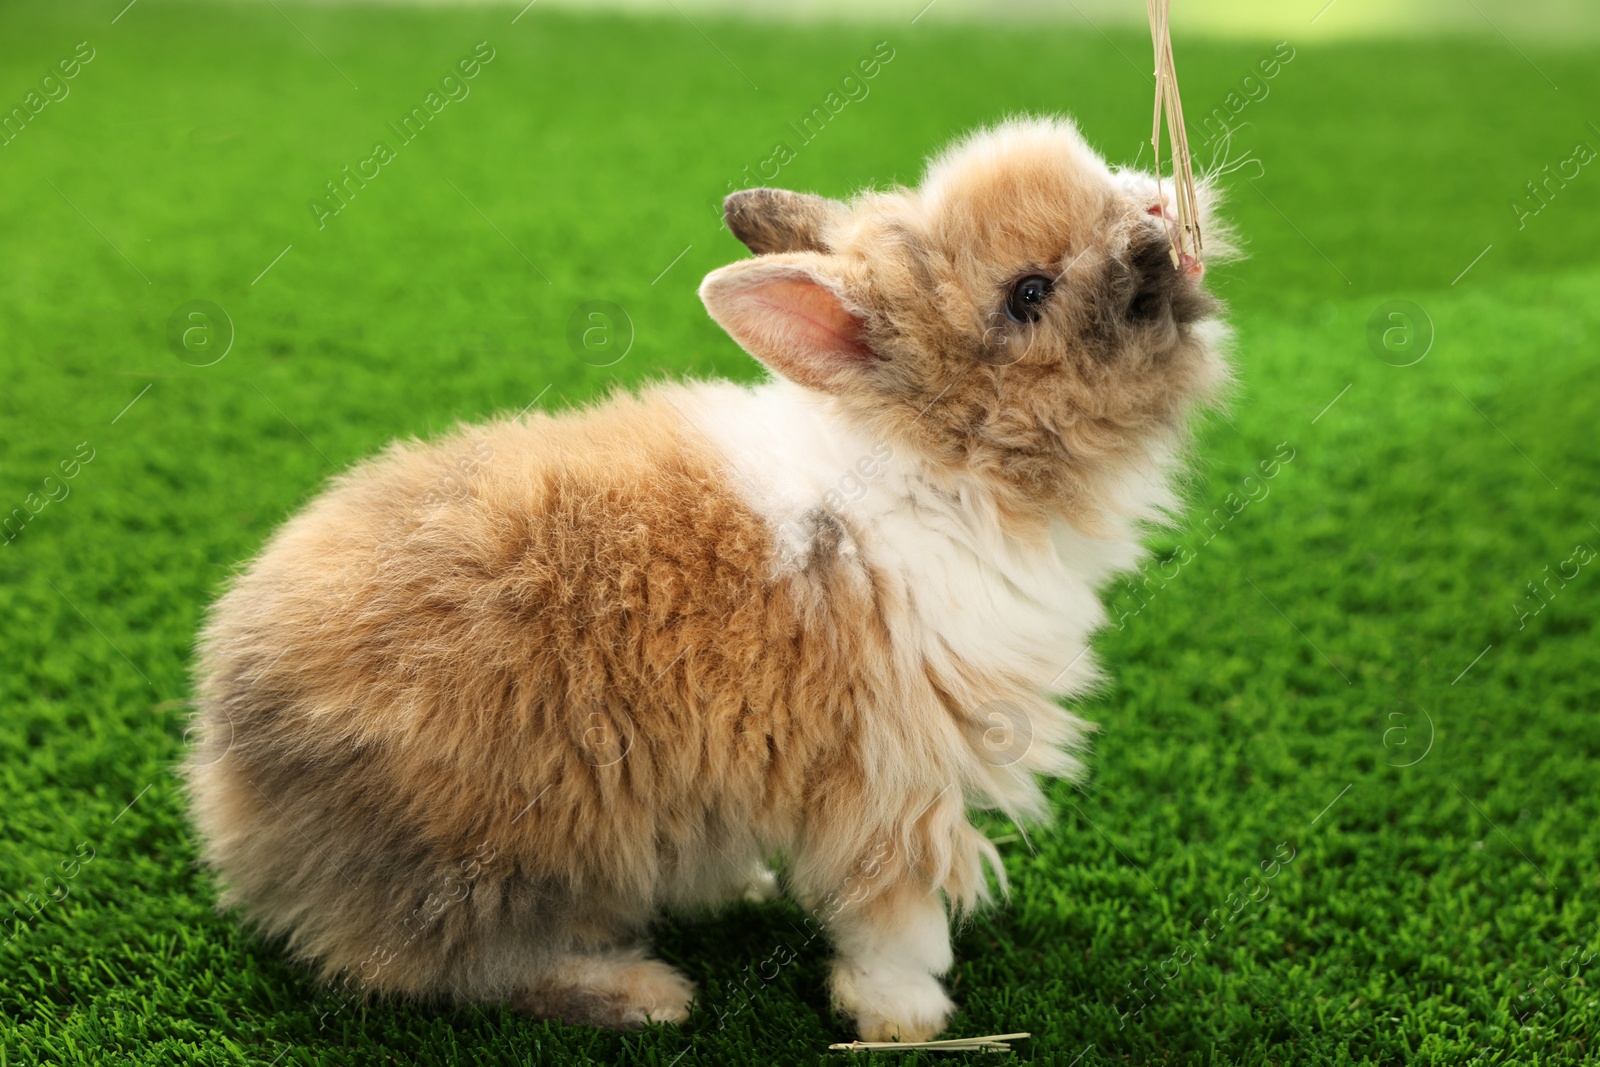 Photo of Cute fluffy pet rabbit on green grass